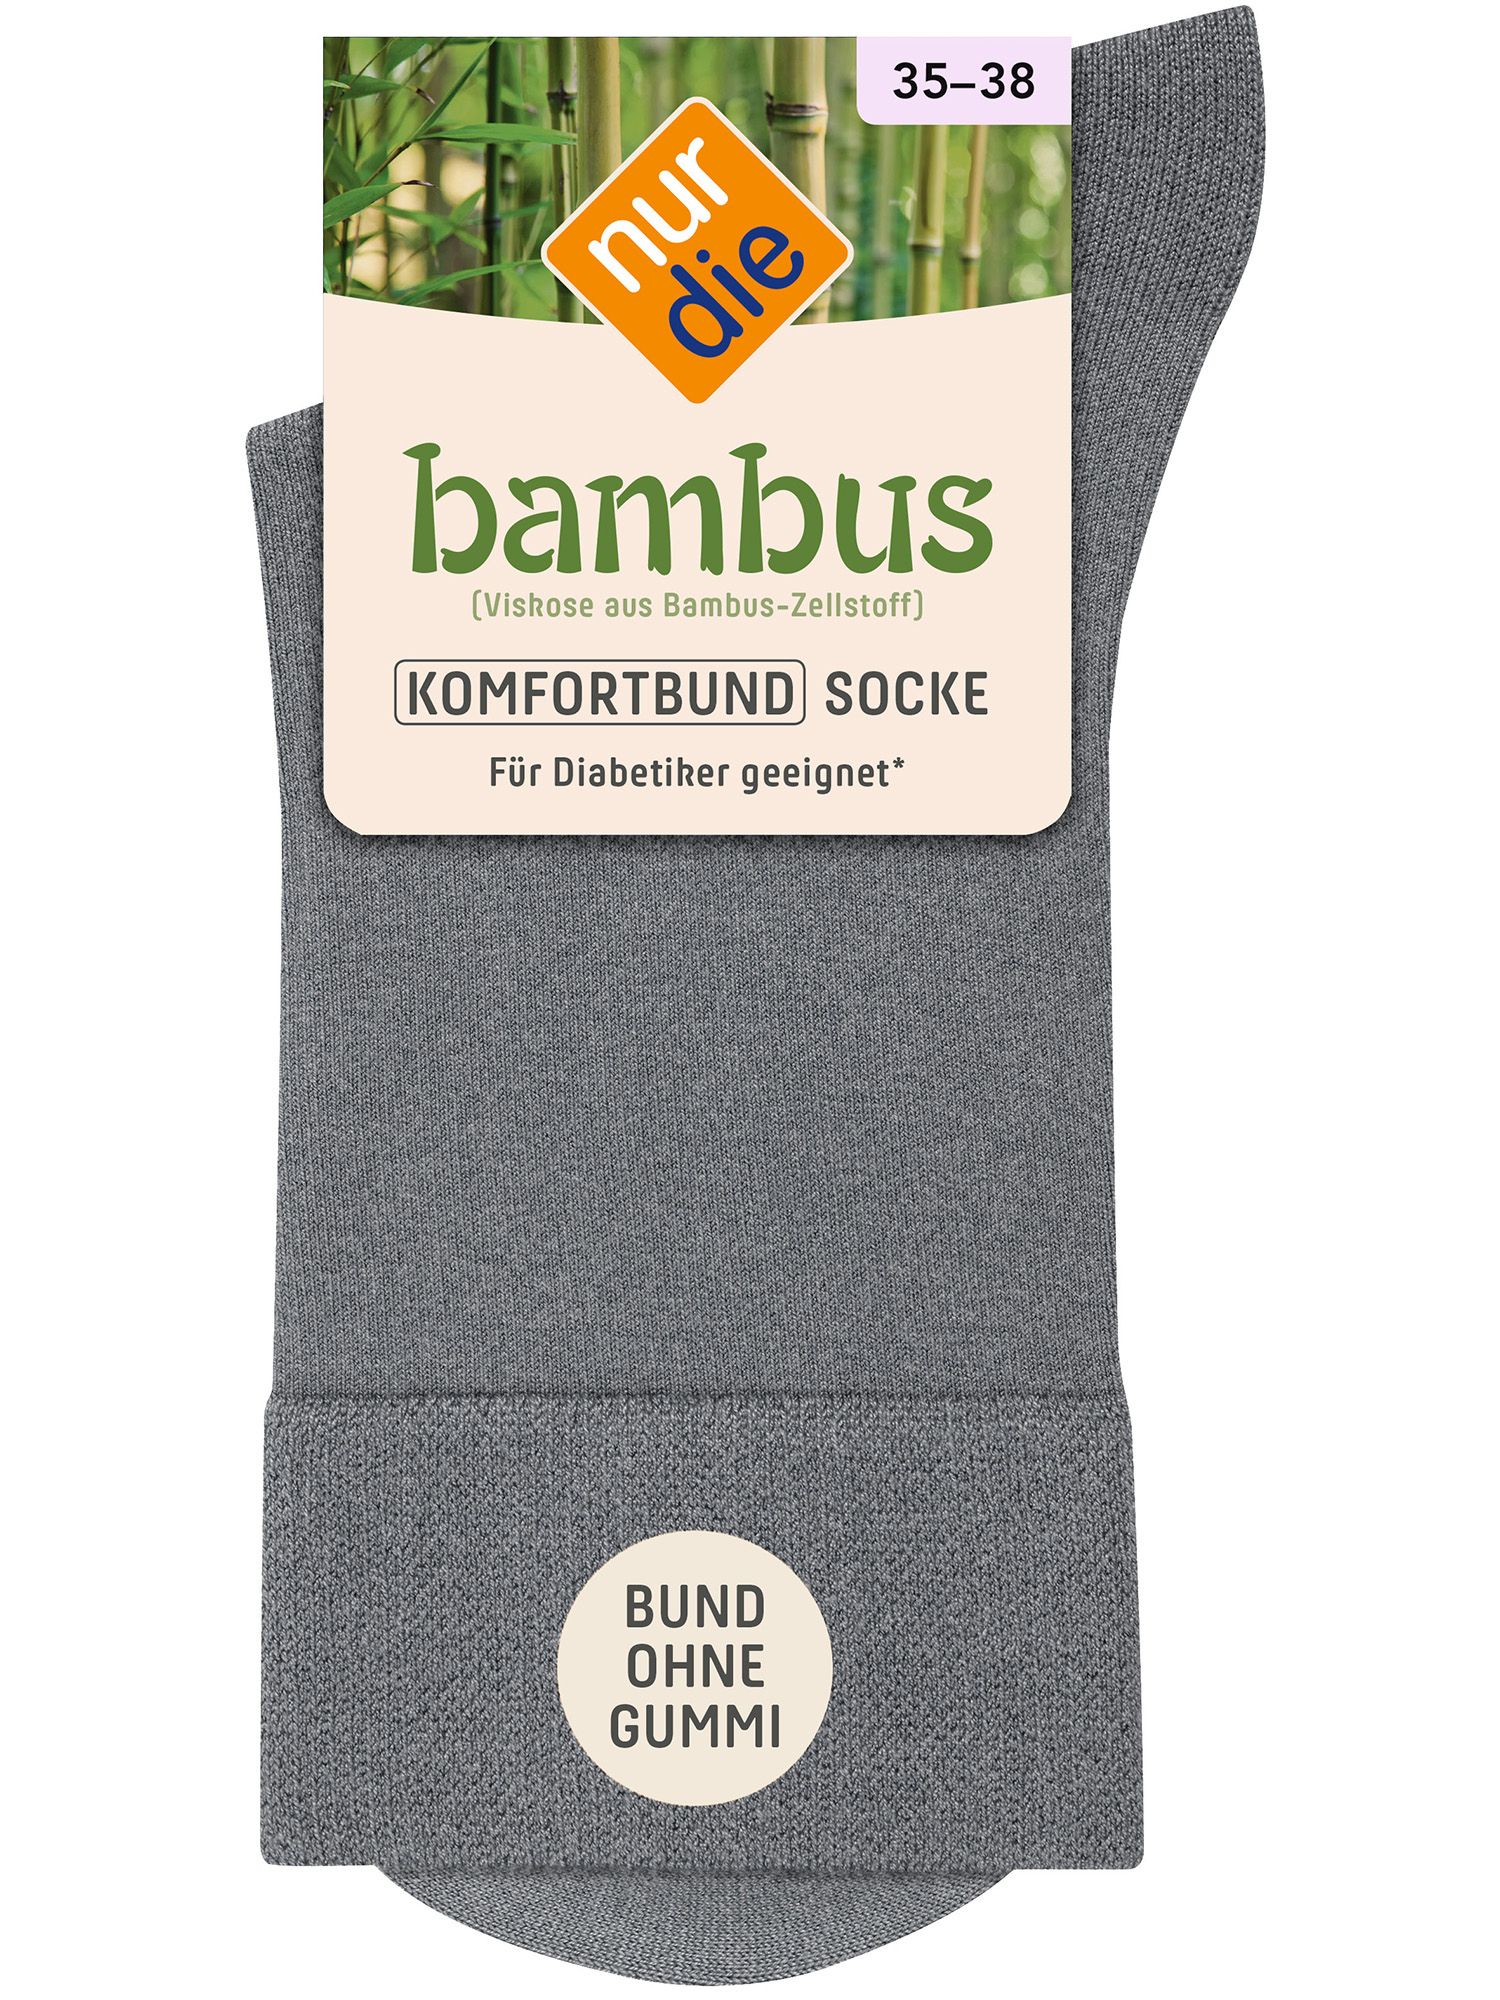 NUR DIE Socke Komfort Bund Bambus* - hellgraumeliert - 39-42